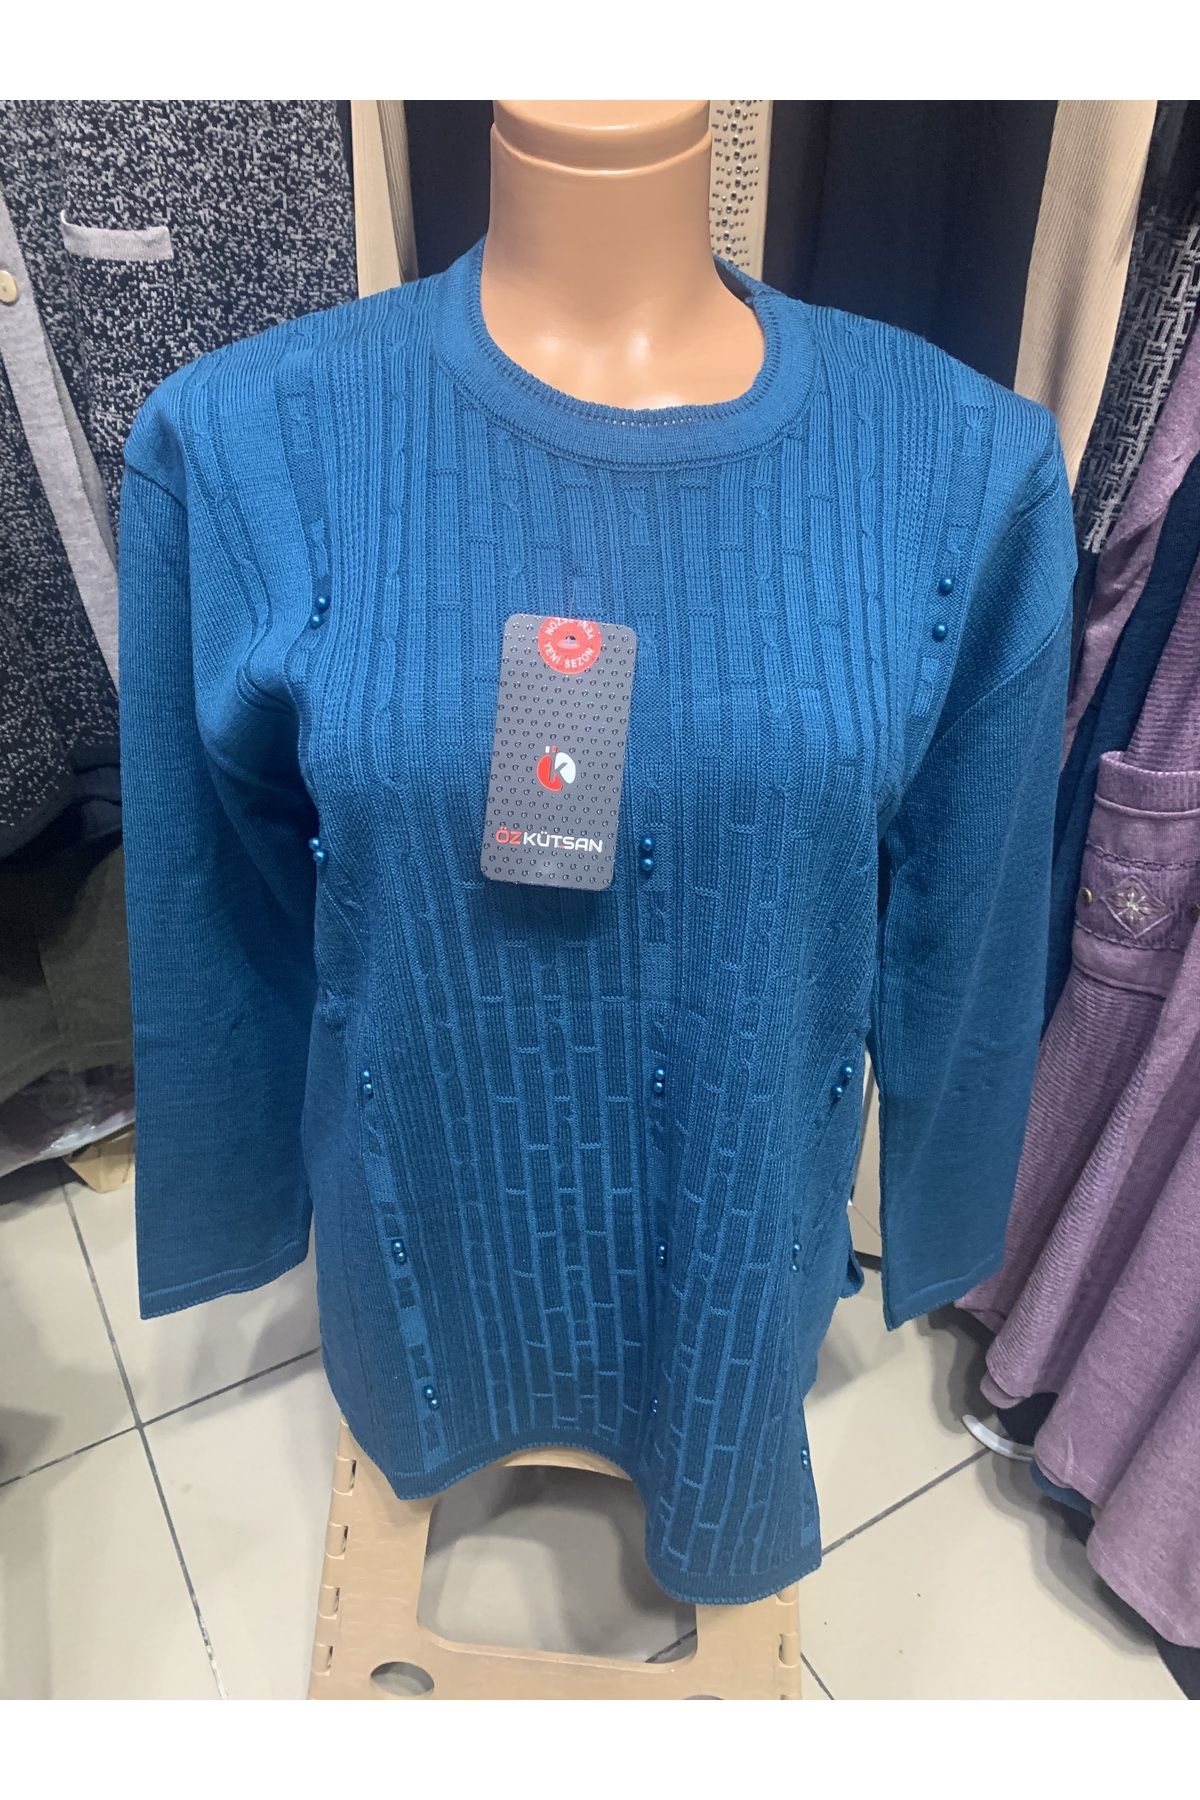 ÖZ Özkütsan inci detaylı triko etek üzeri anne kazak bluz